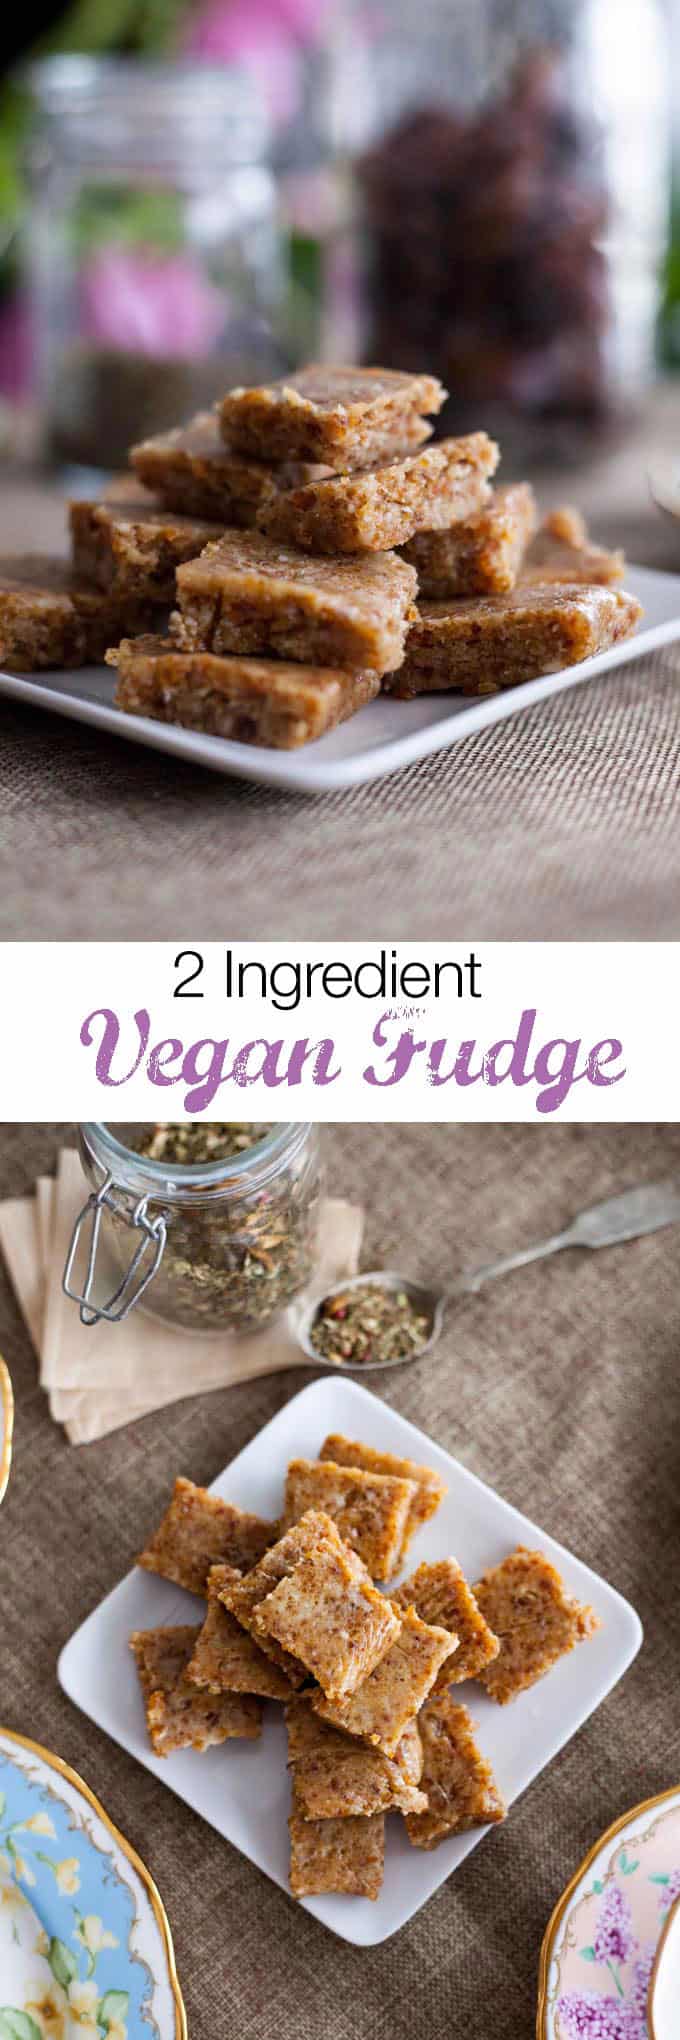 Easy raw vegan fudge recipe